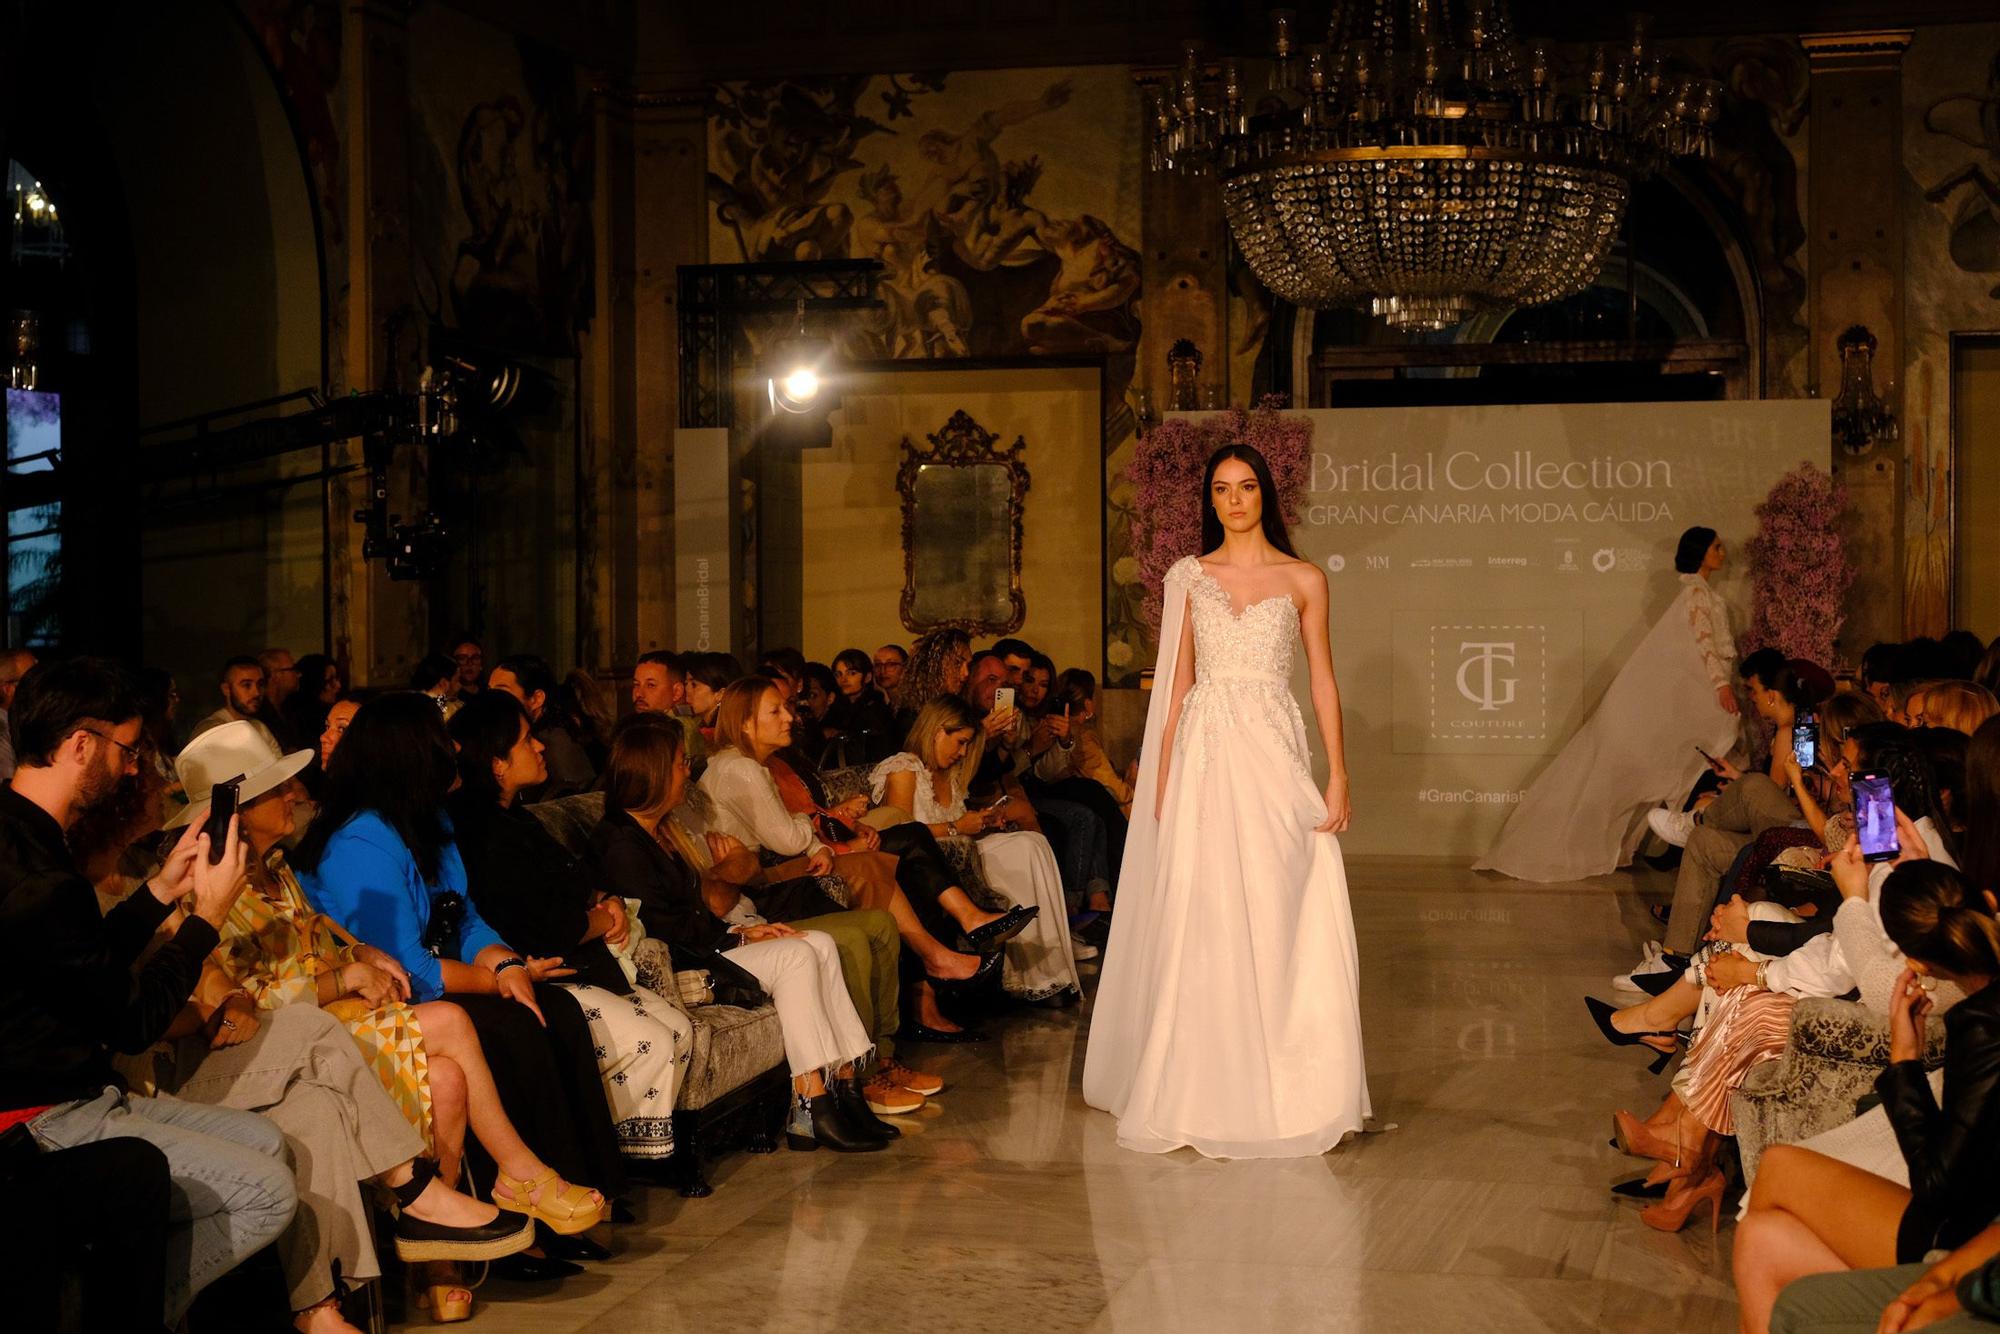 Segunda jornada de Bridal Collection Gran Canaria Moda Cálida